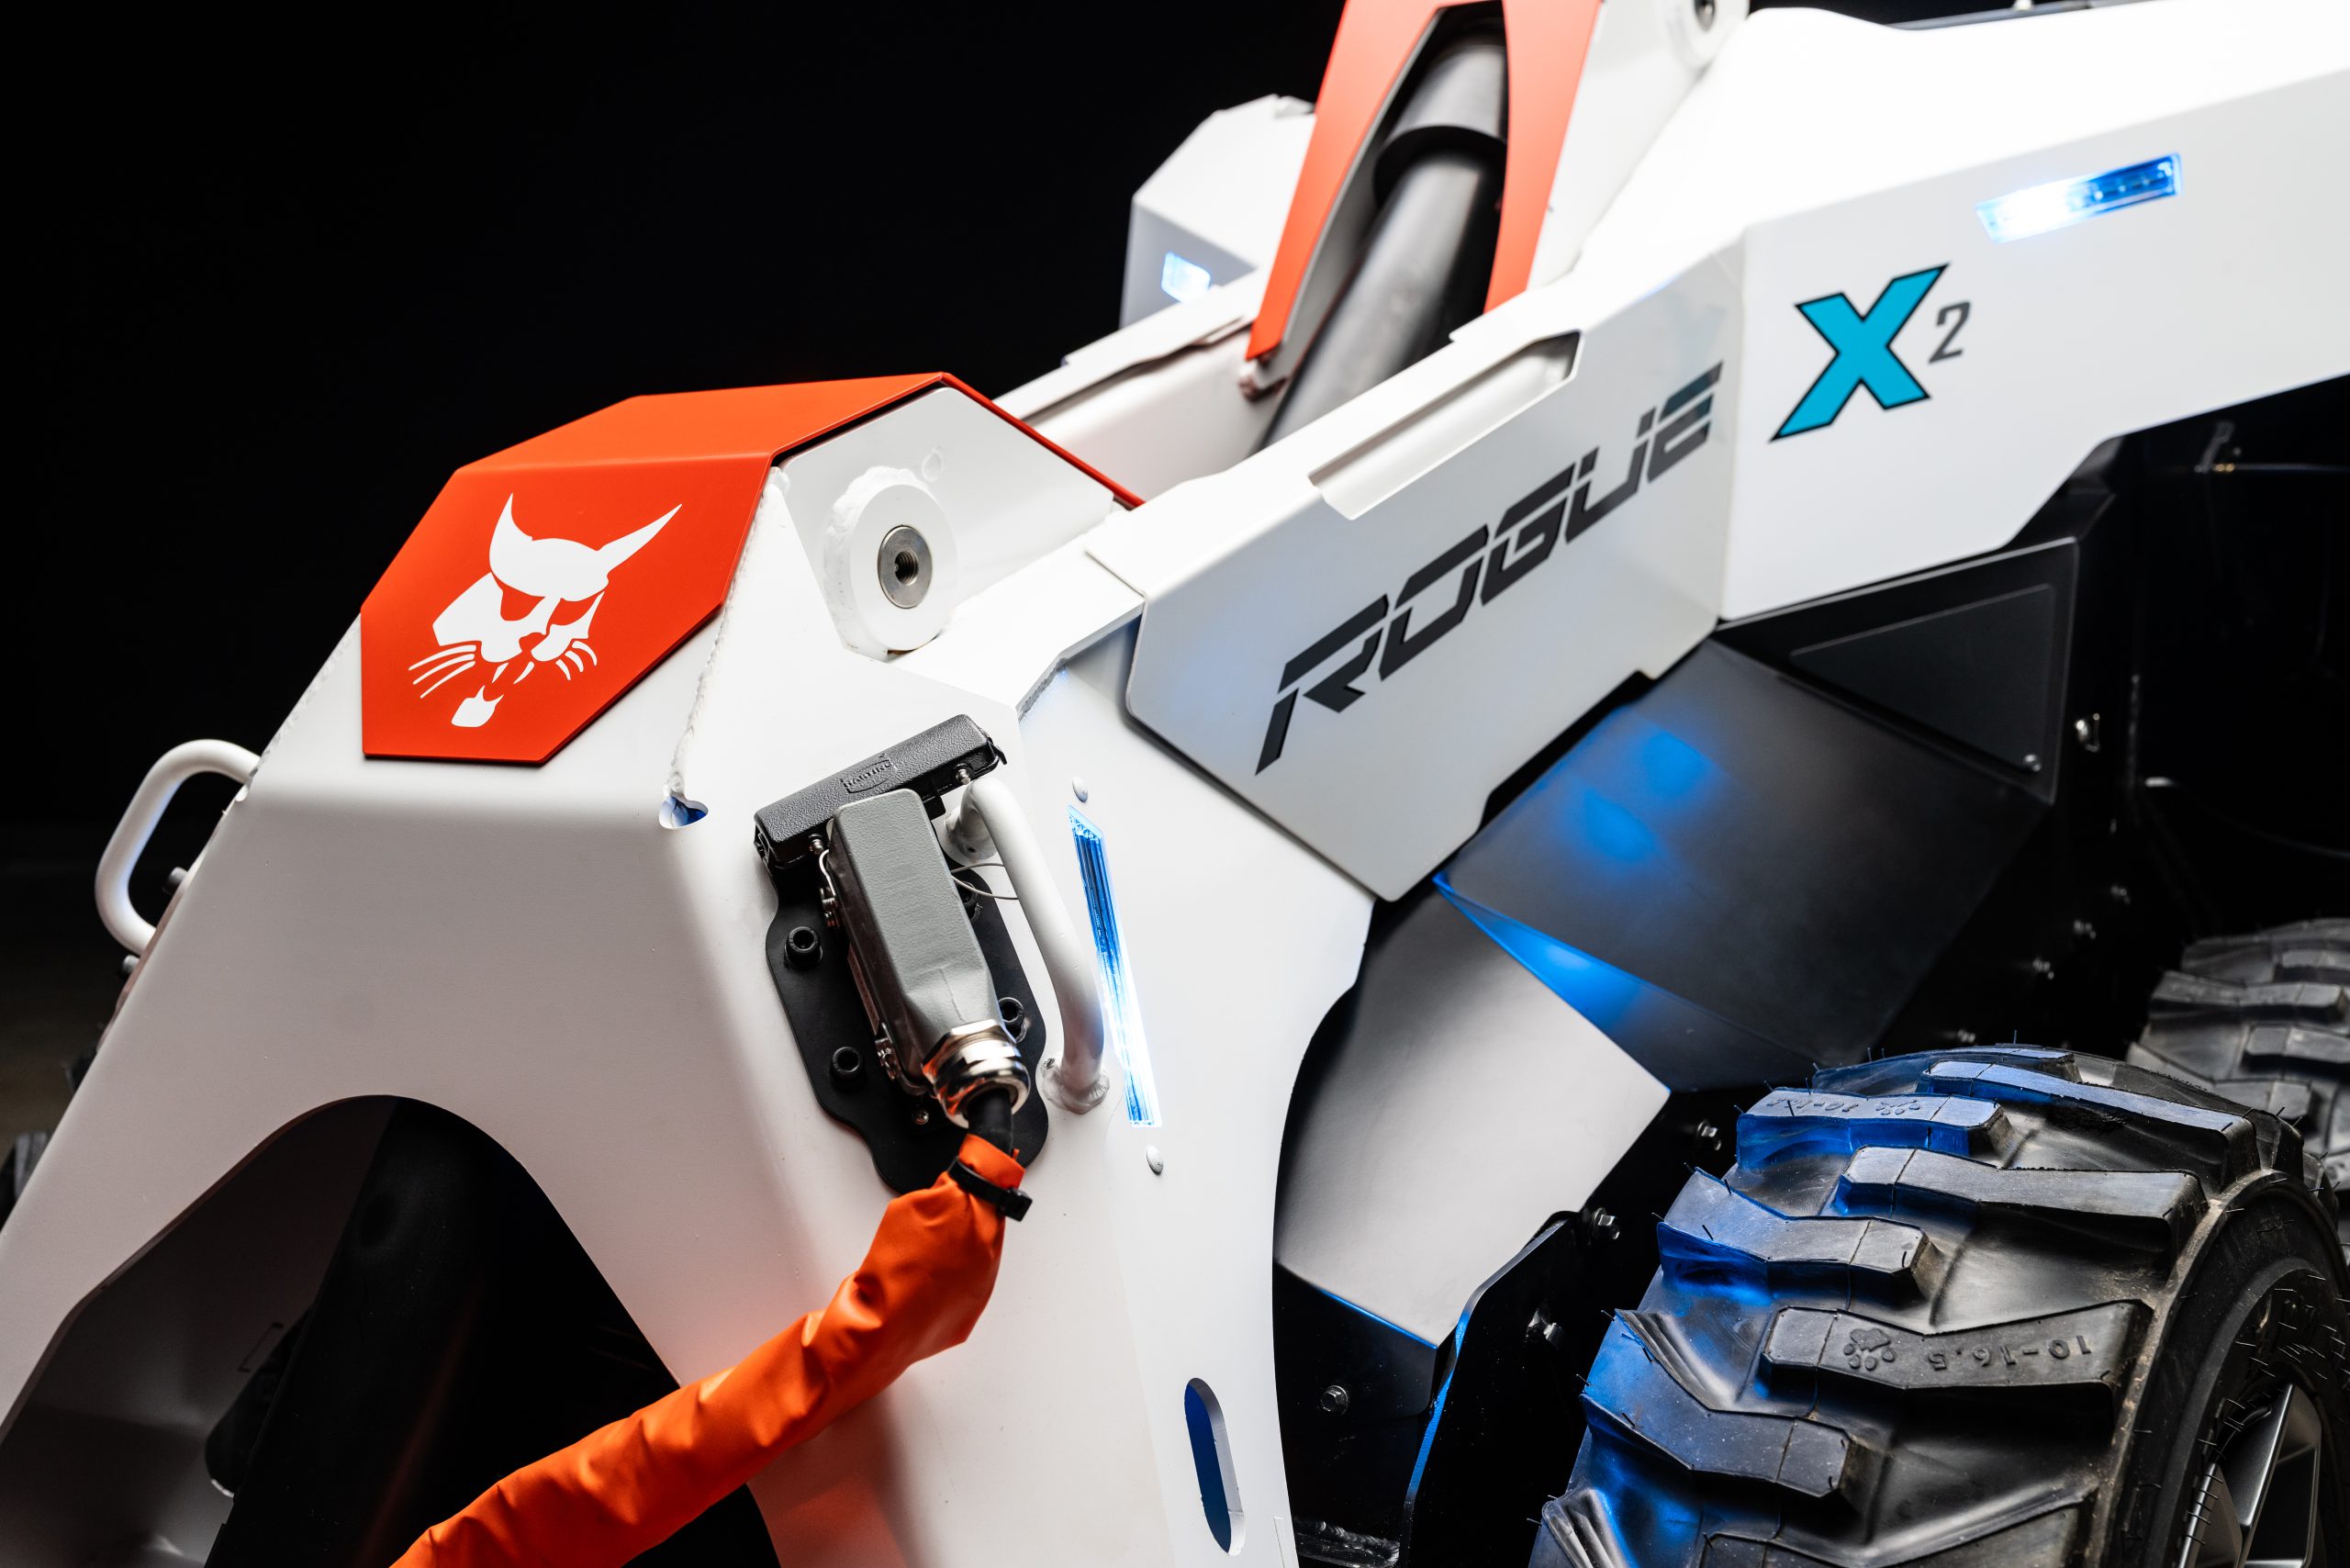 Il RogueX2 è una macchina autonoma presente ad Intermat